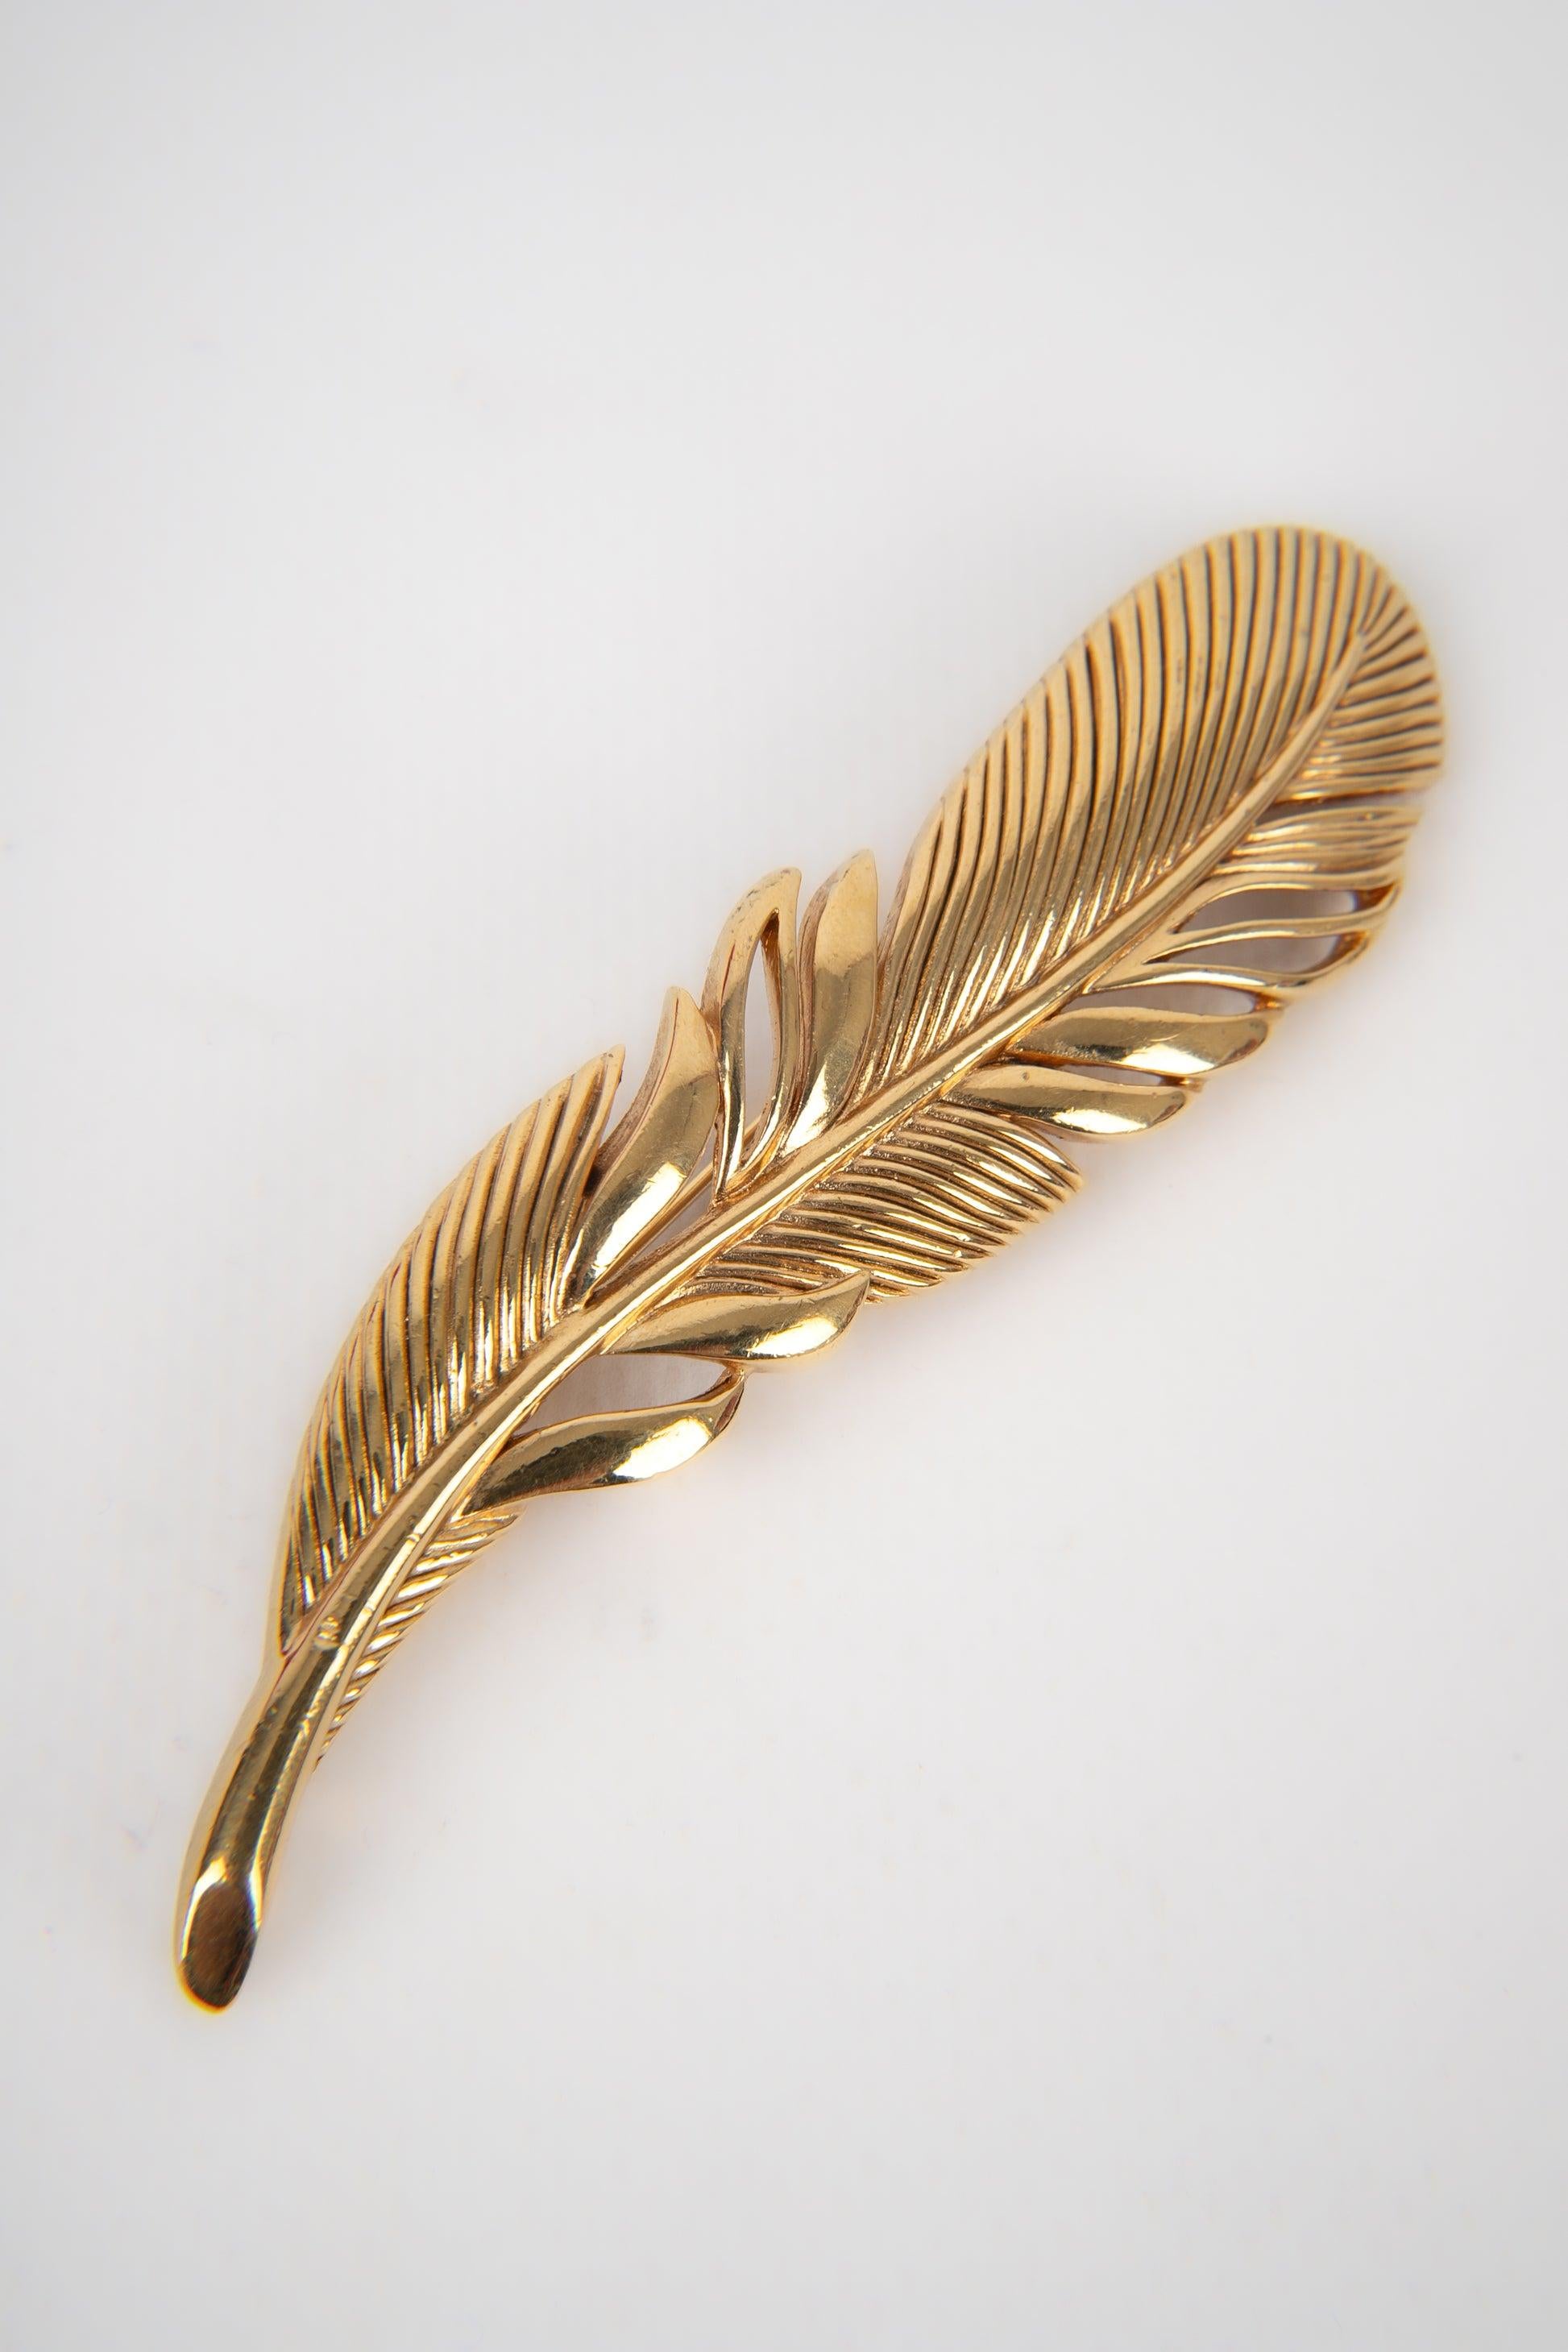 Dior - (Made in France) Goldene Metallbrosche, die eine Feder darstellt.
 
 Zusätzliche Informationen: 
 Zustand: Sehr guter Zustand
 Abmessungen: 9 cm x 2,5 cm
 
 Referenz des Sellers: BR141